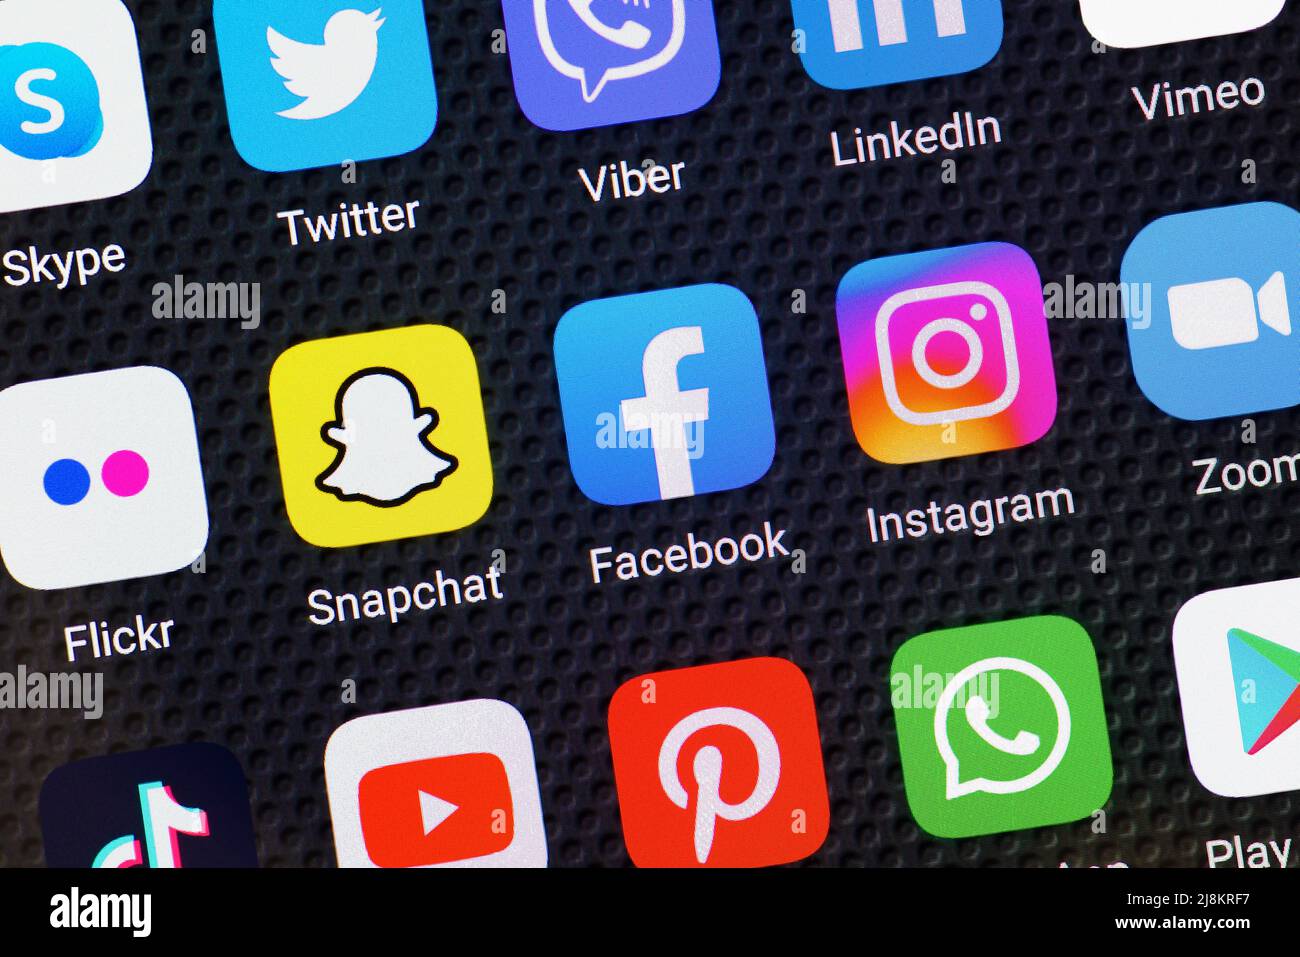 Los medios sociales iconos de App en un smartphone Foto de stock